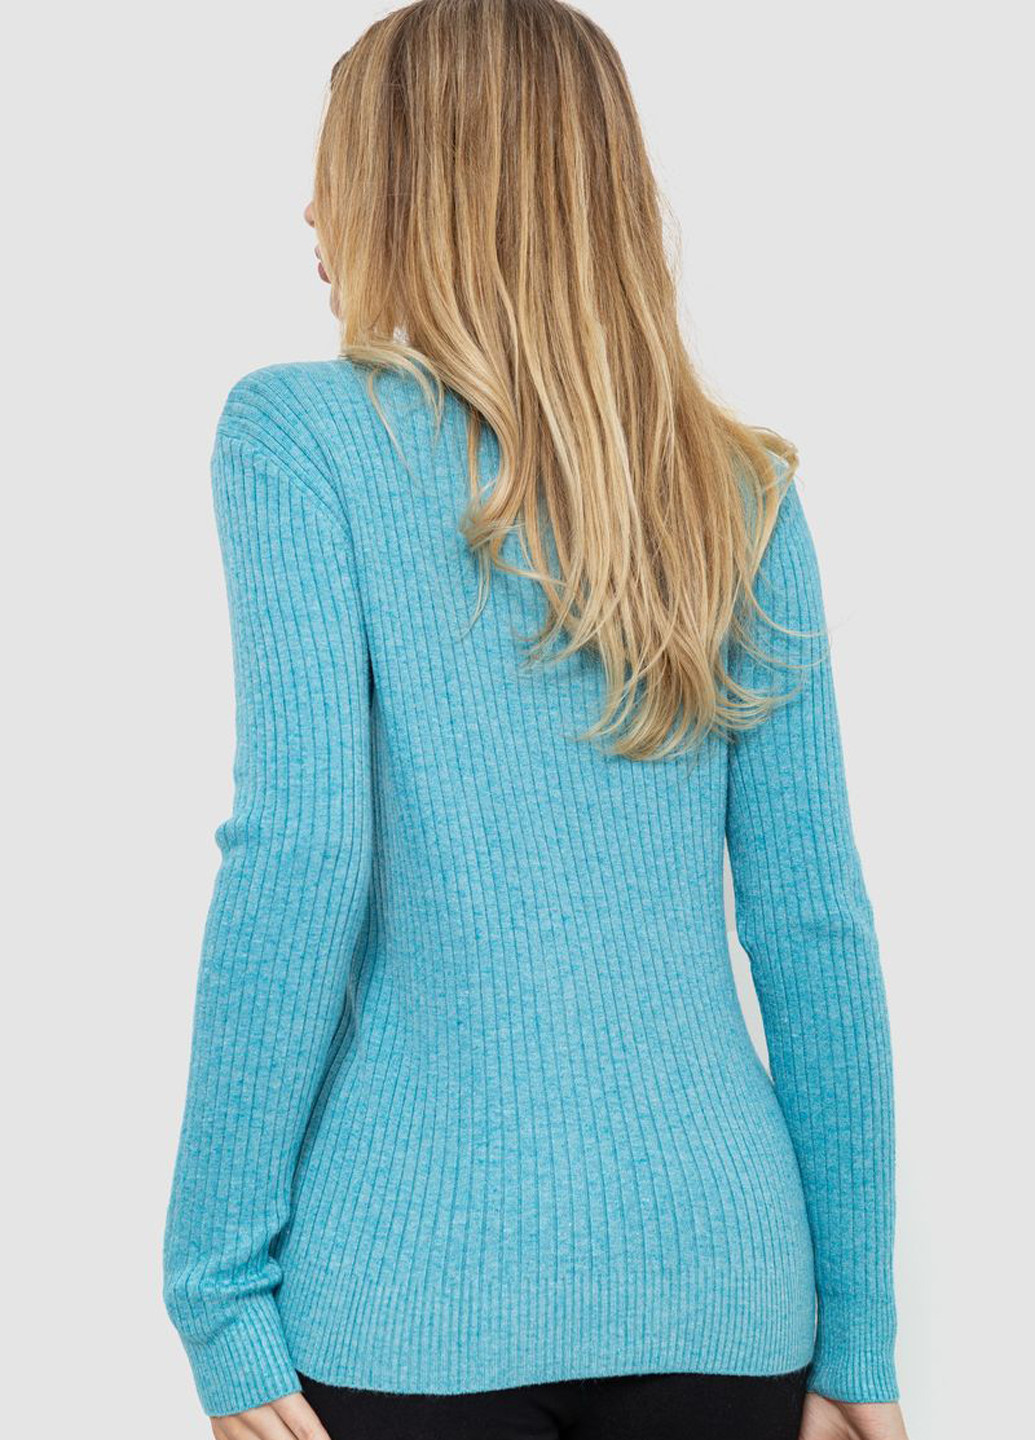 Темно-бирюзовый демисезонный пуловер пуловер Ager